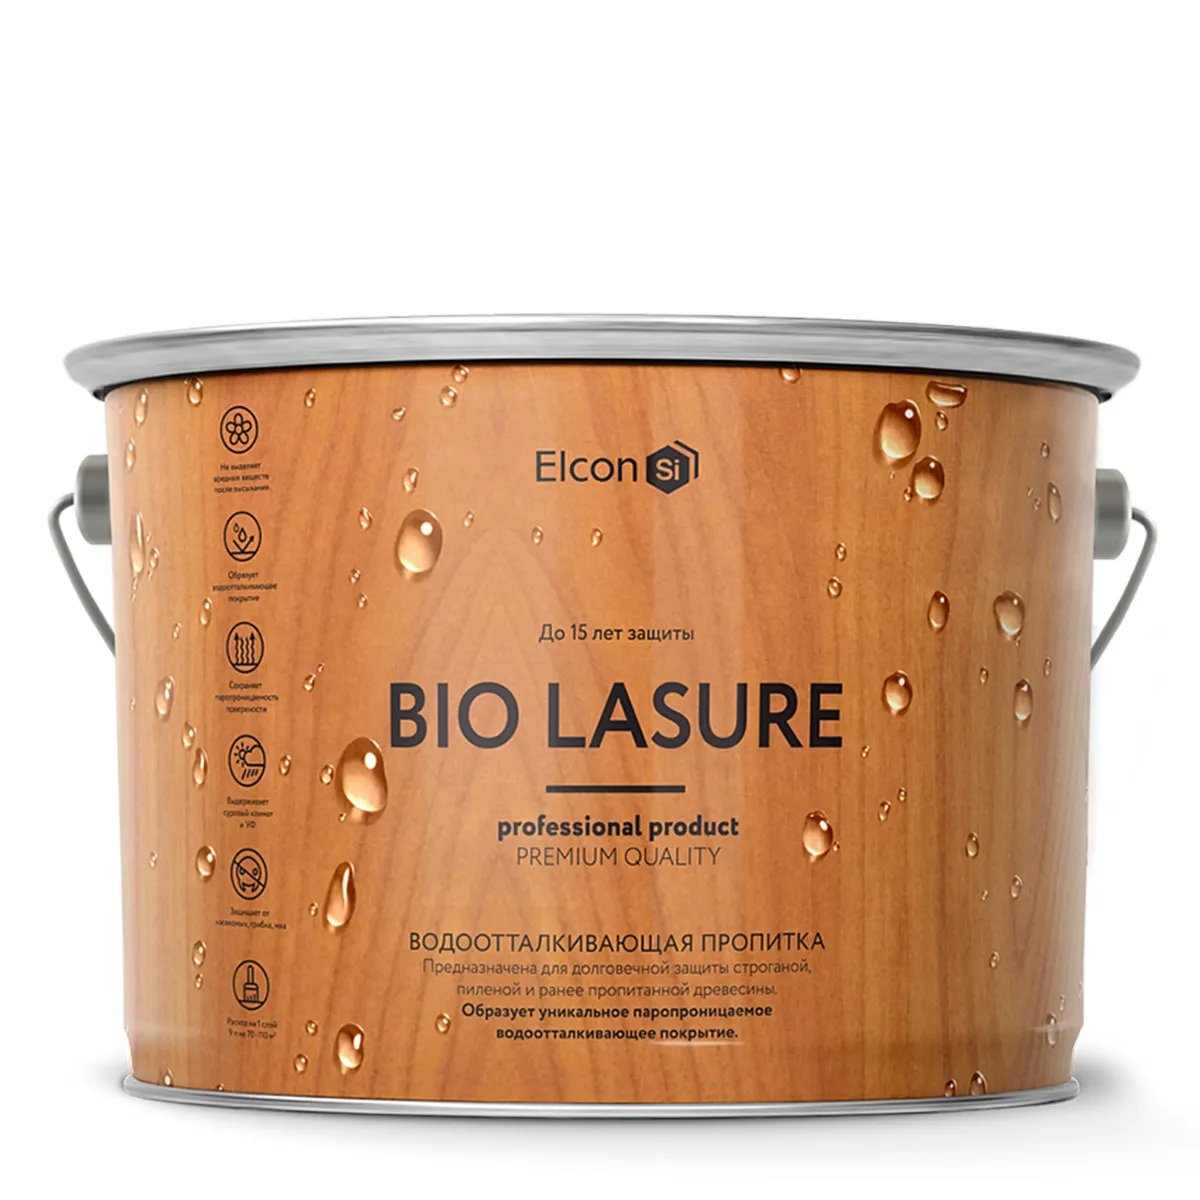 Пропитка для защиты древесины Elcon Bio Lasure (c водоотталкивающим эффектом), орегон, 2 л#1